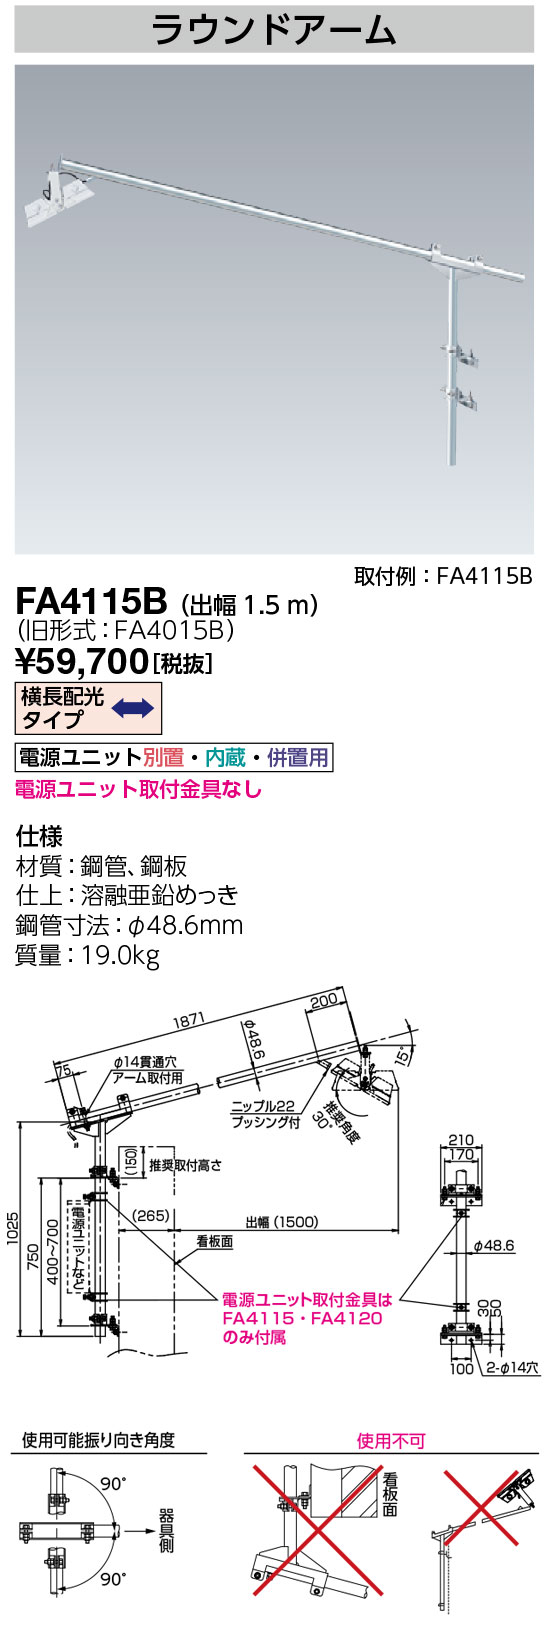 FA4115B